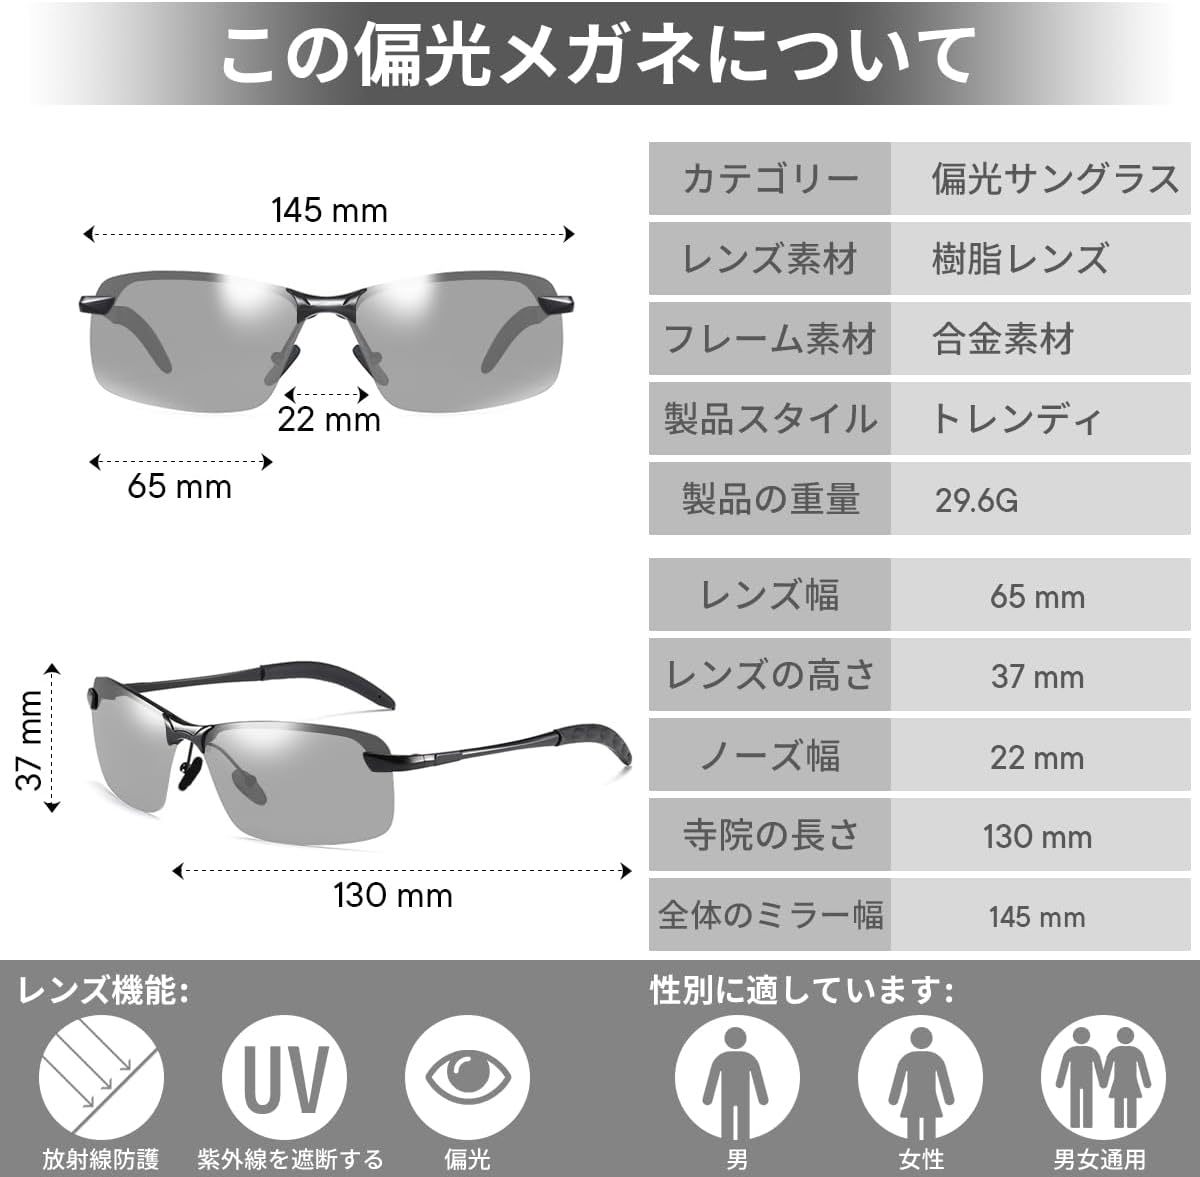 [Kindpack] 偏光スポーツサングラス 変色調光偏光グラス 昼夜兼用・超軽量メタル UV400 紫外線カットレディース メンズ 